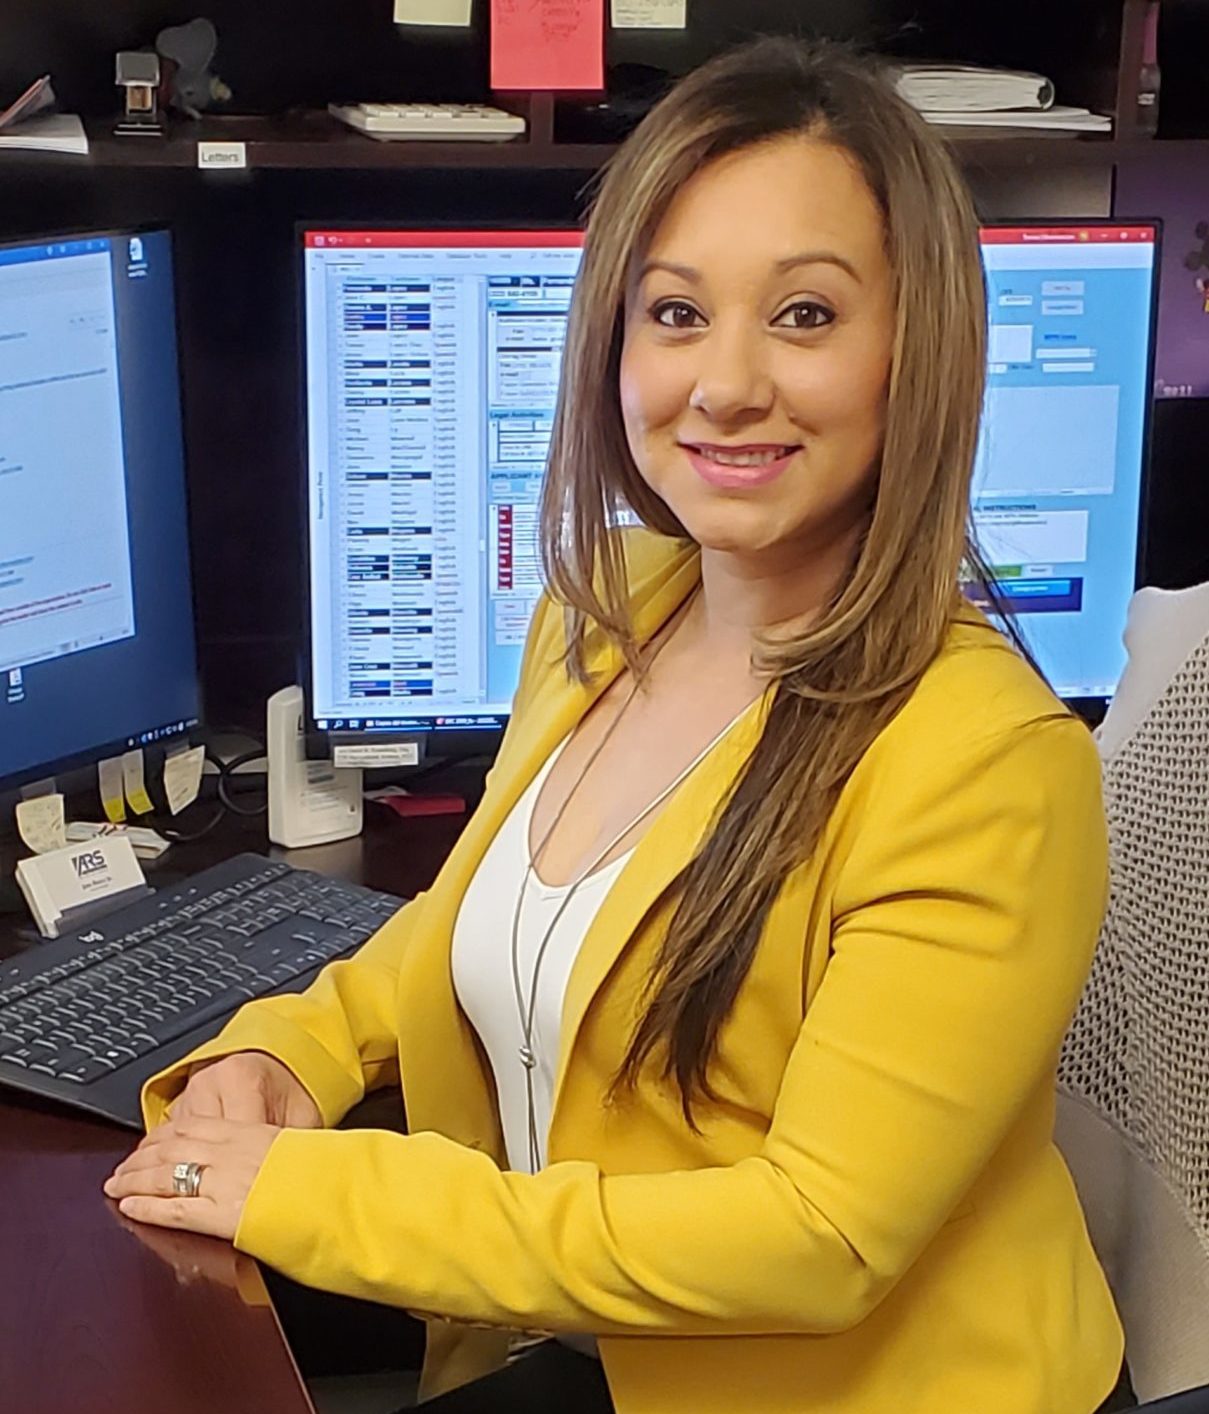 Assistant Leticia Villarreal at desk